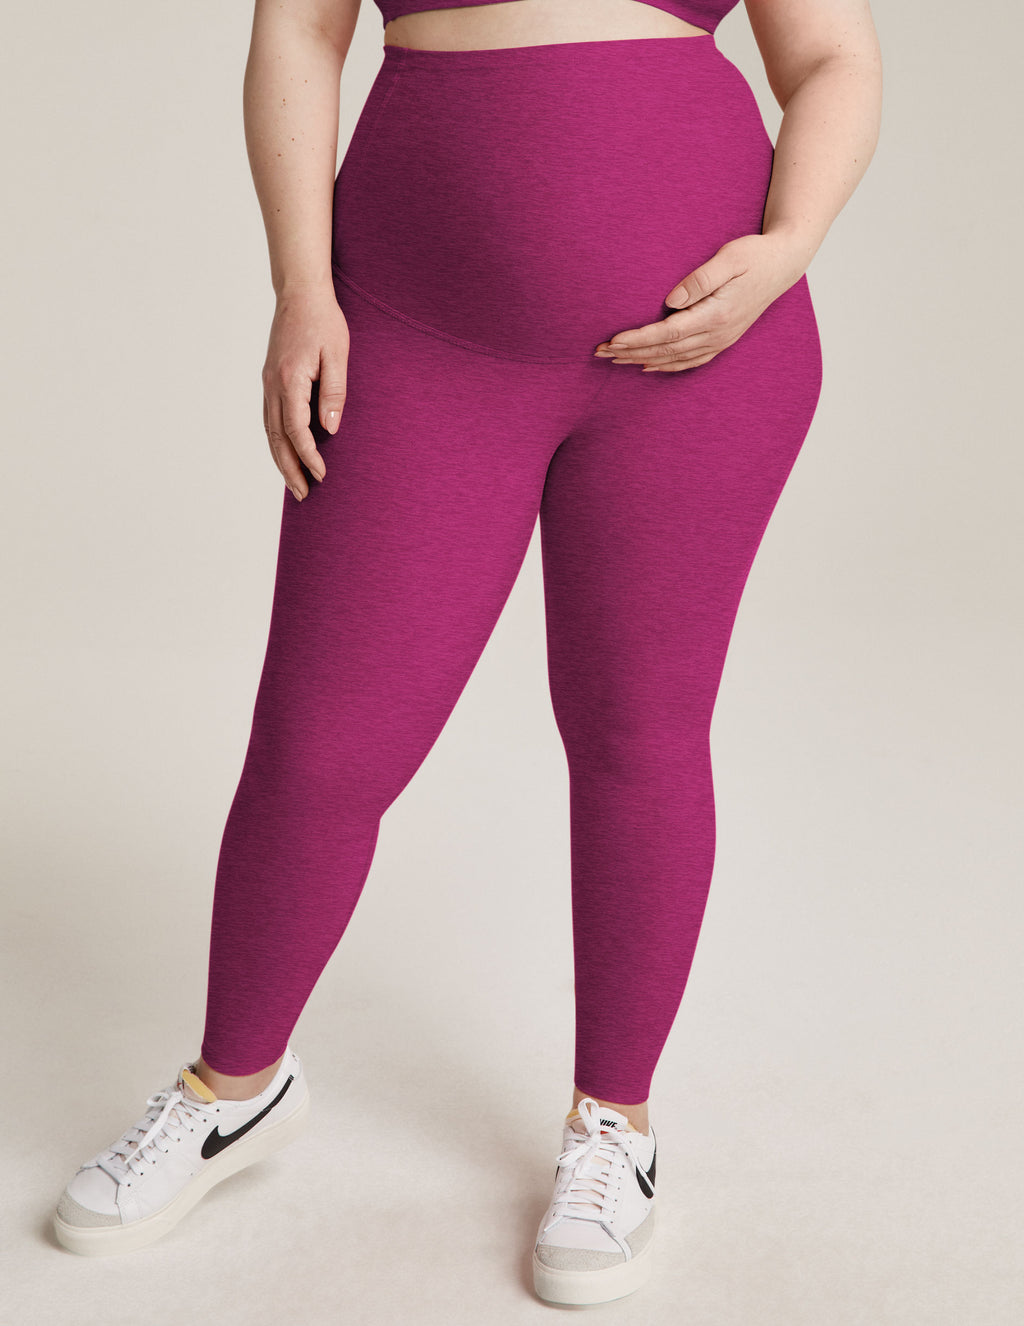 Buy Maternity Leggings - Pink